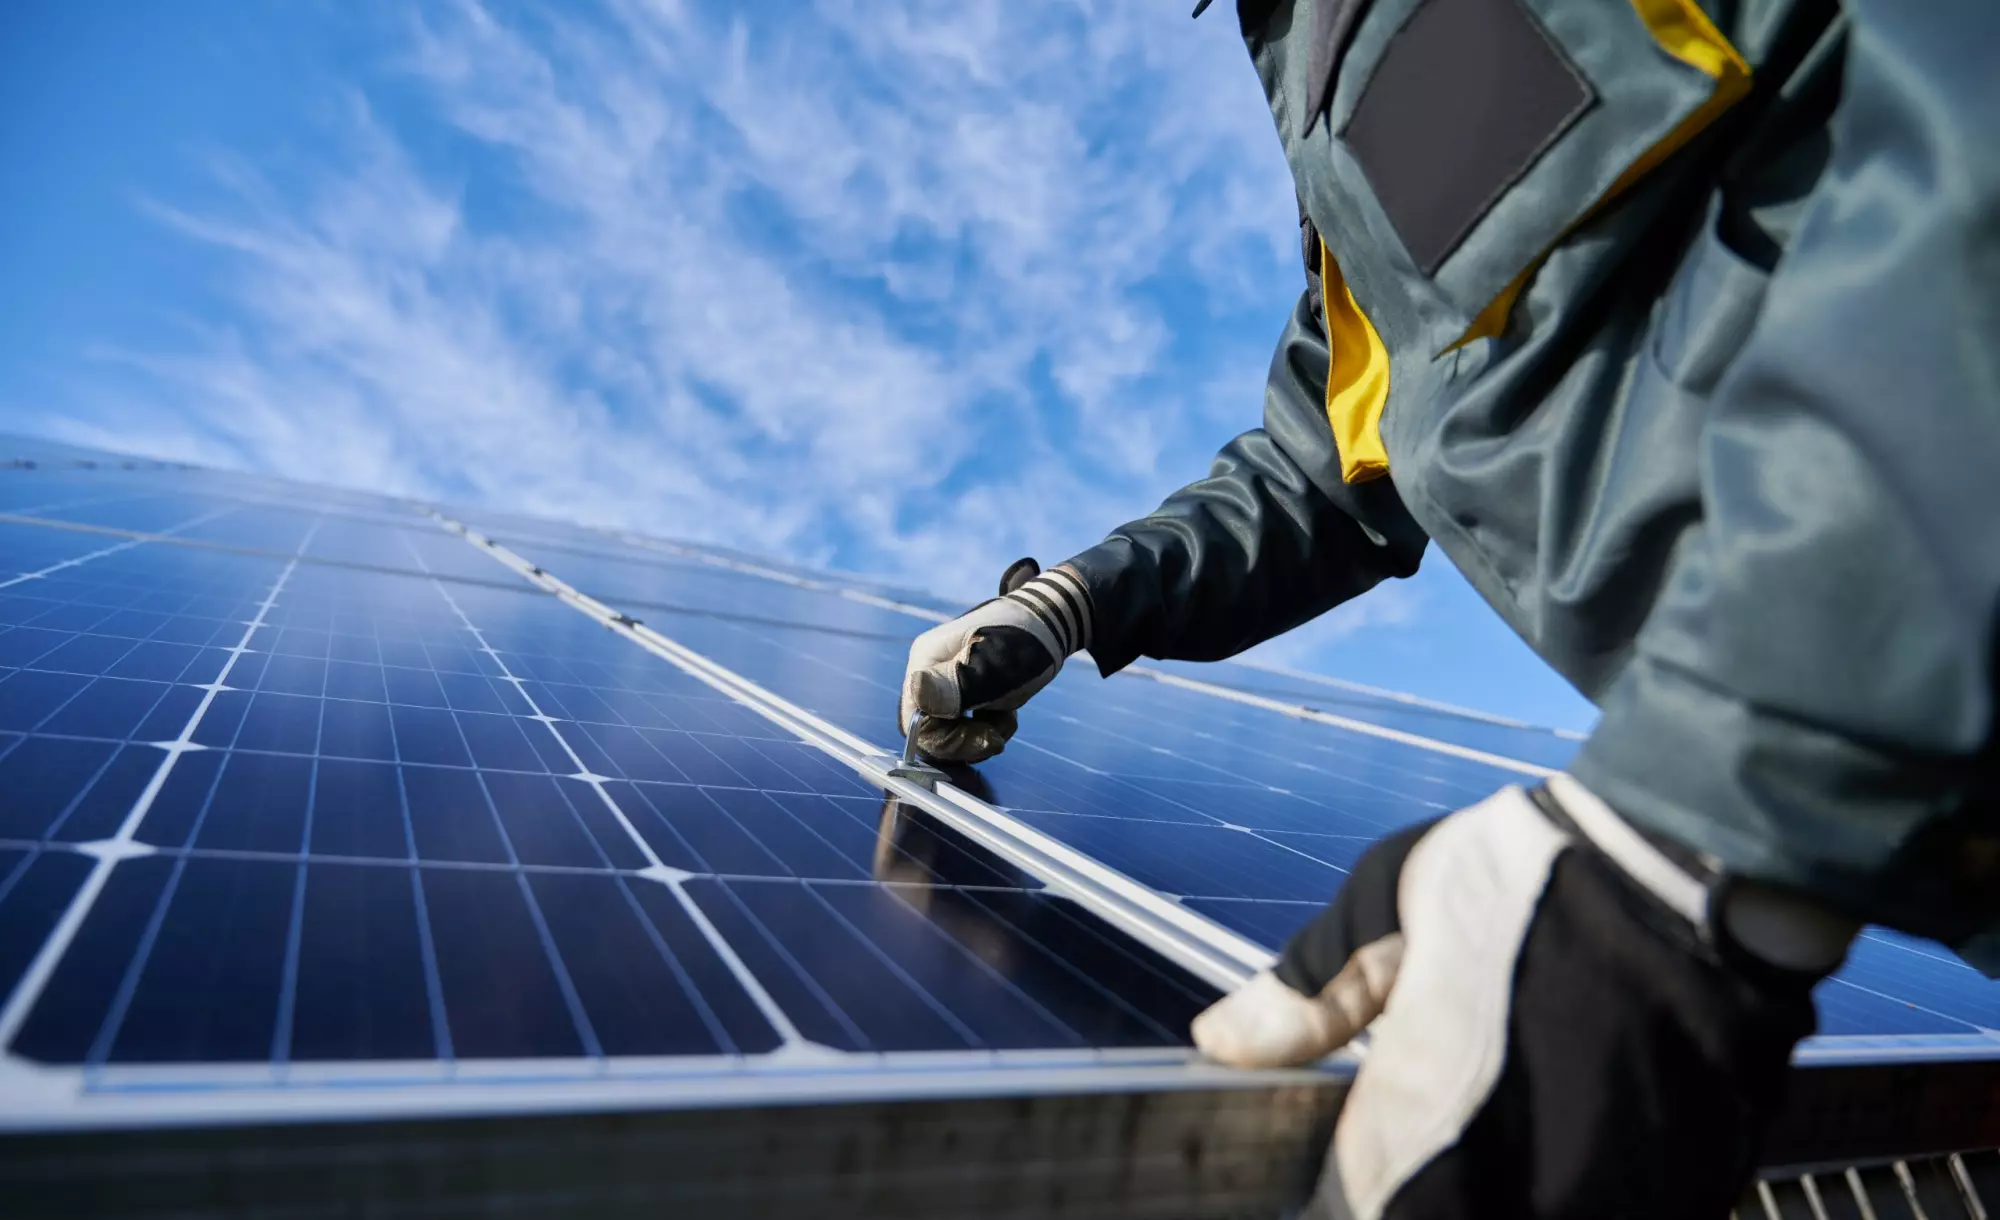 O projeto das empresas visa levar energia solar a todas as obras da Mozak já no ano de 2023, impulsionando o compromisso ambiental. A Genial Solar utilizará suas usinas para contribuir com uma energia limpa no setor da construção civil.